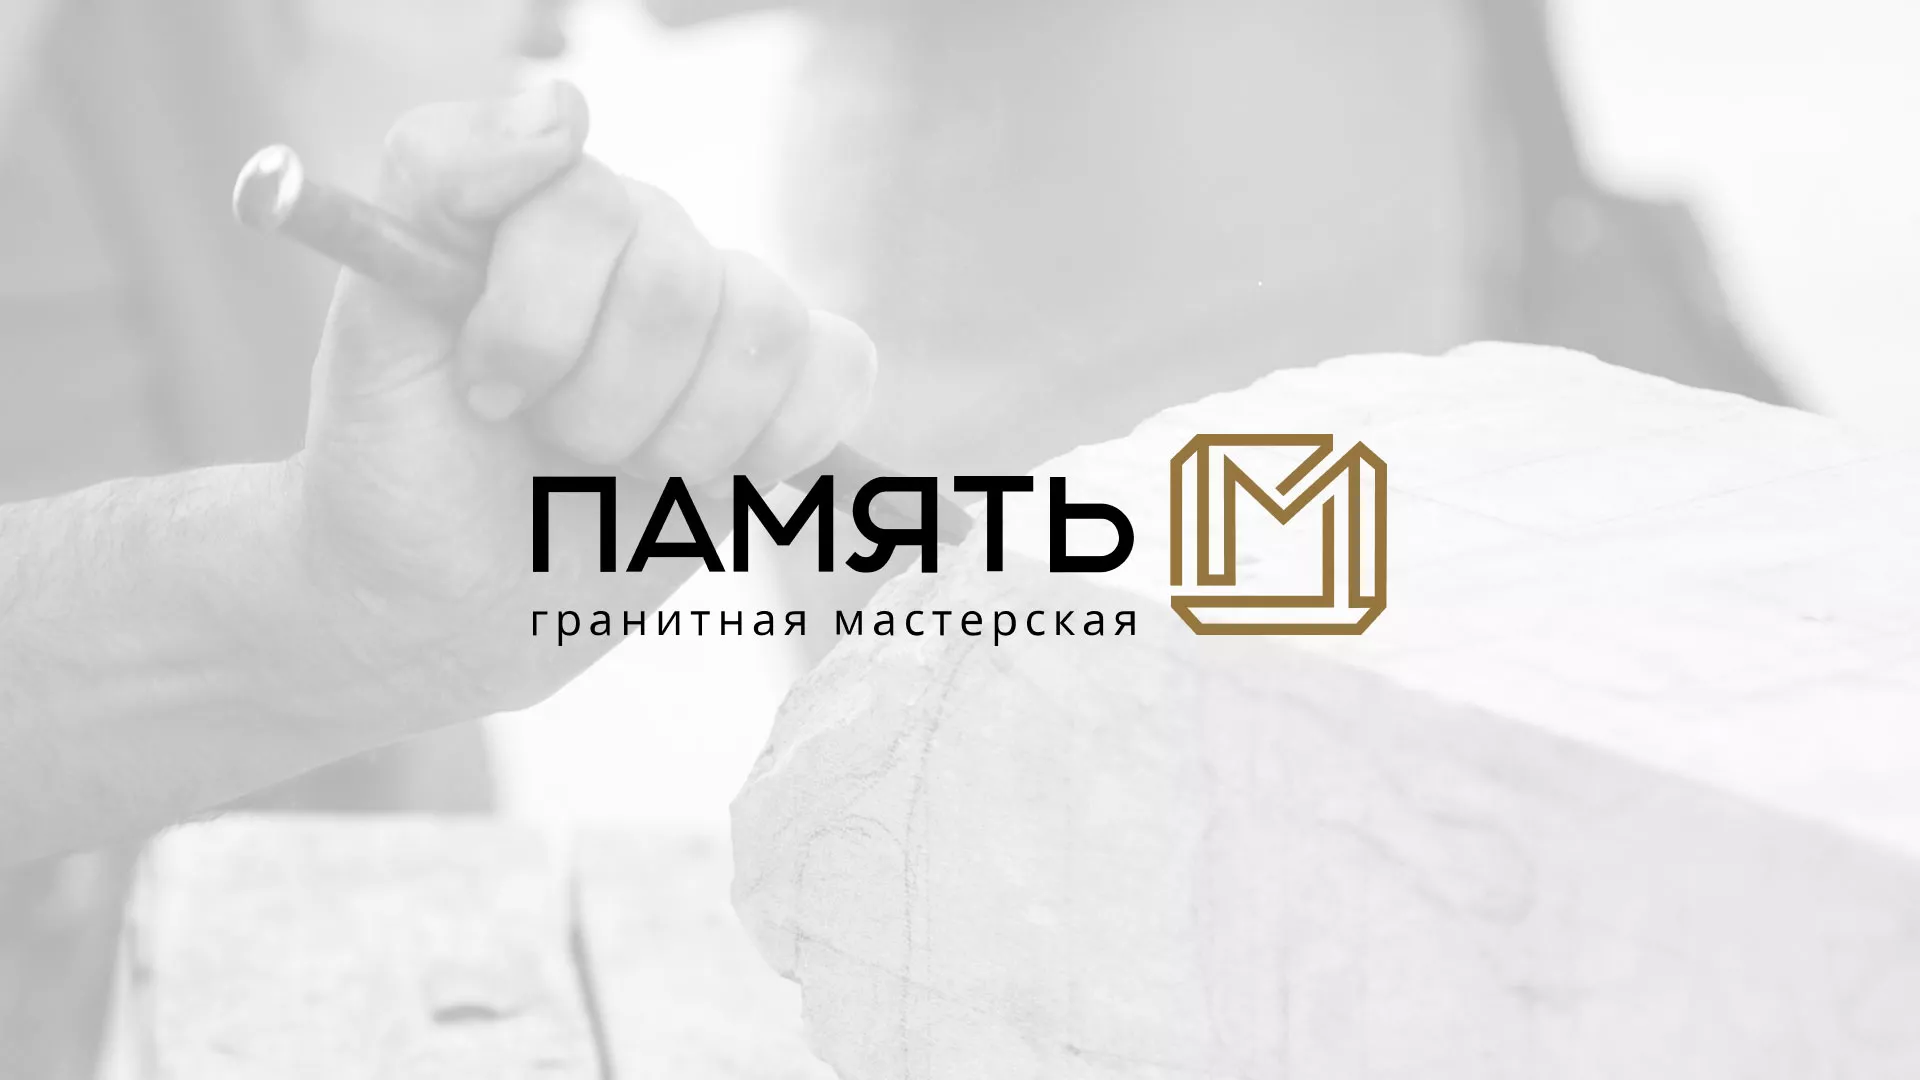 Разработка логотипа и сайта компании «Память-М» в Харабалях